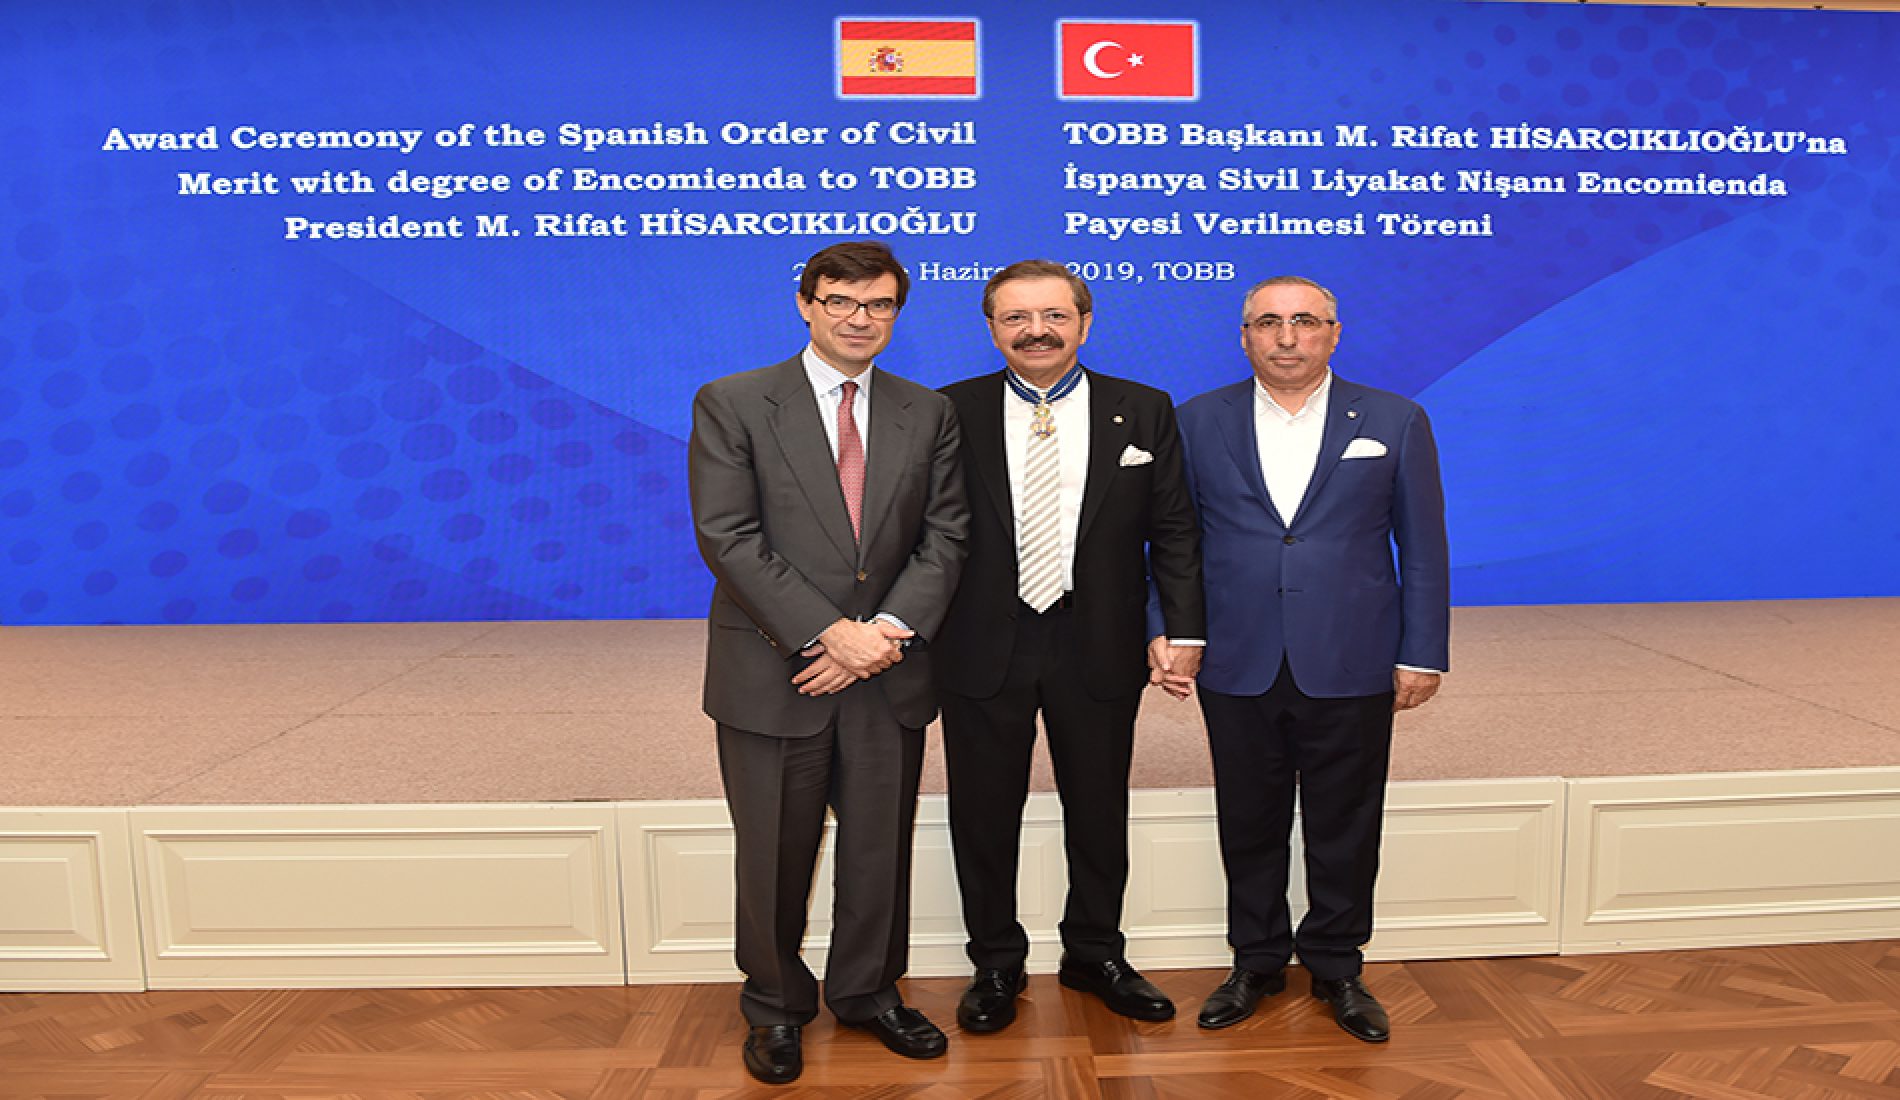 Başkanımız Yahya TOPLU, Türkiye Odalar ve Borsalar Birliği (TOBB) Başkanı M. Rifat HİSARCIKLIOĞLU’na verilen Ödül Törenine katıldı.